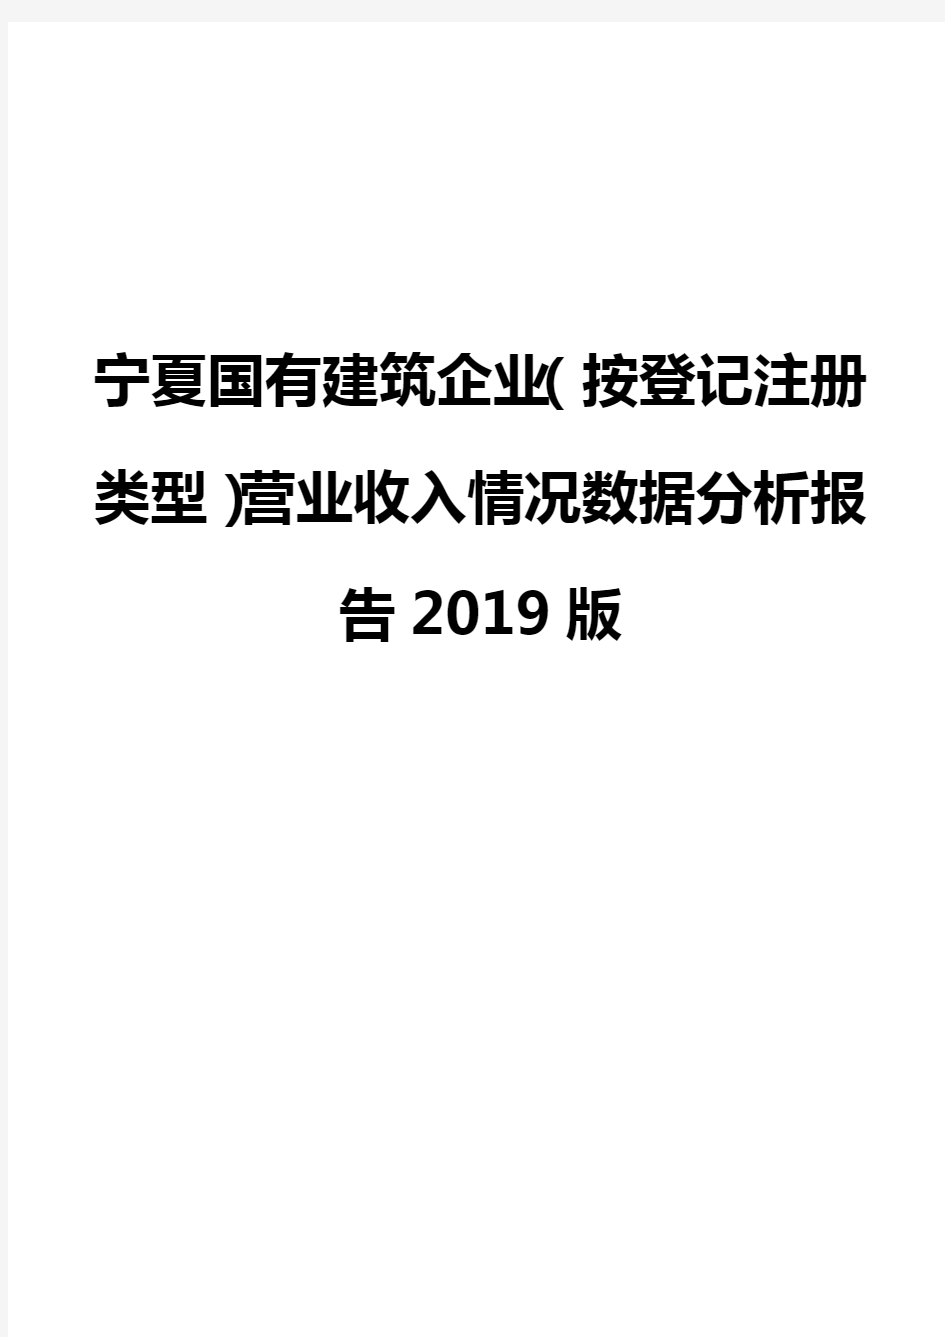 宁夏国有建筑企业(按登记注册类型)营业收入情况数据分析报告2019版